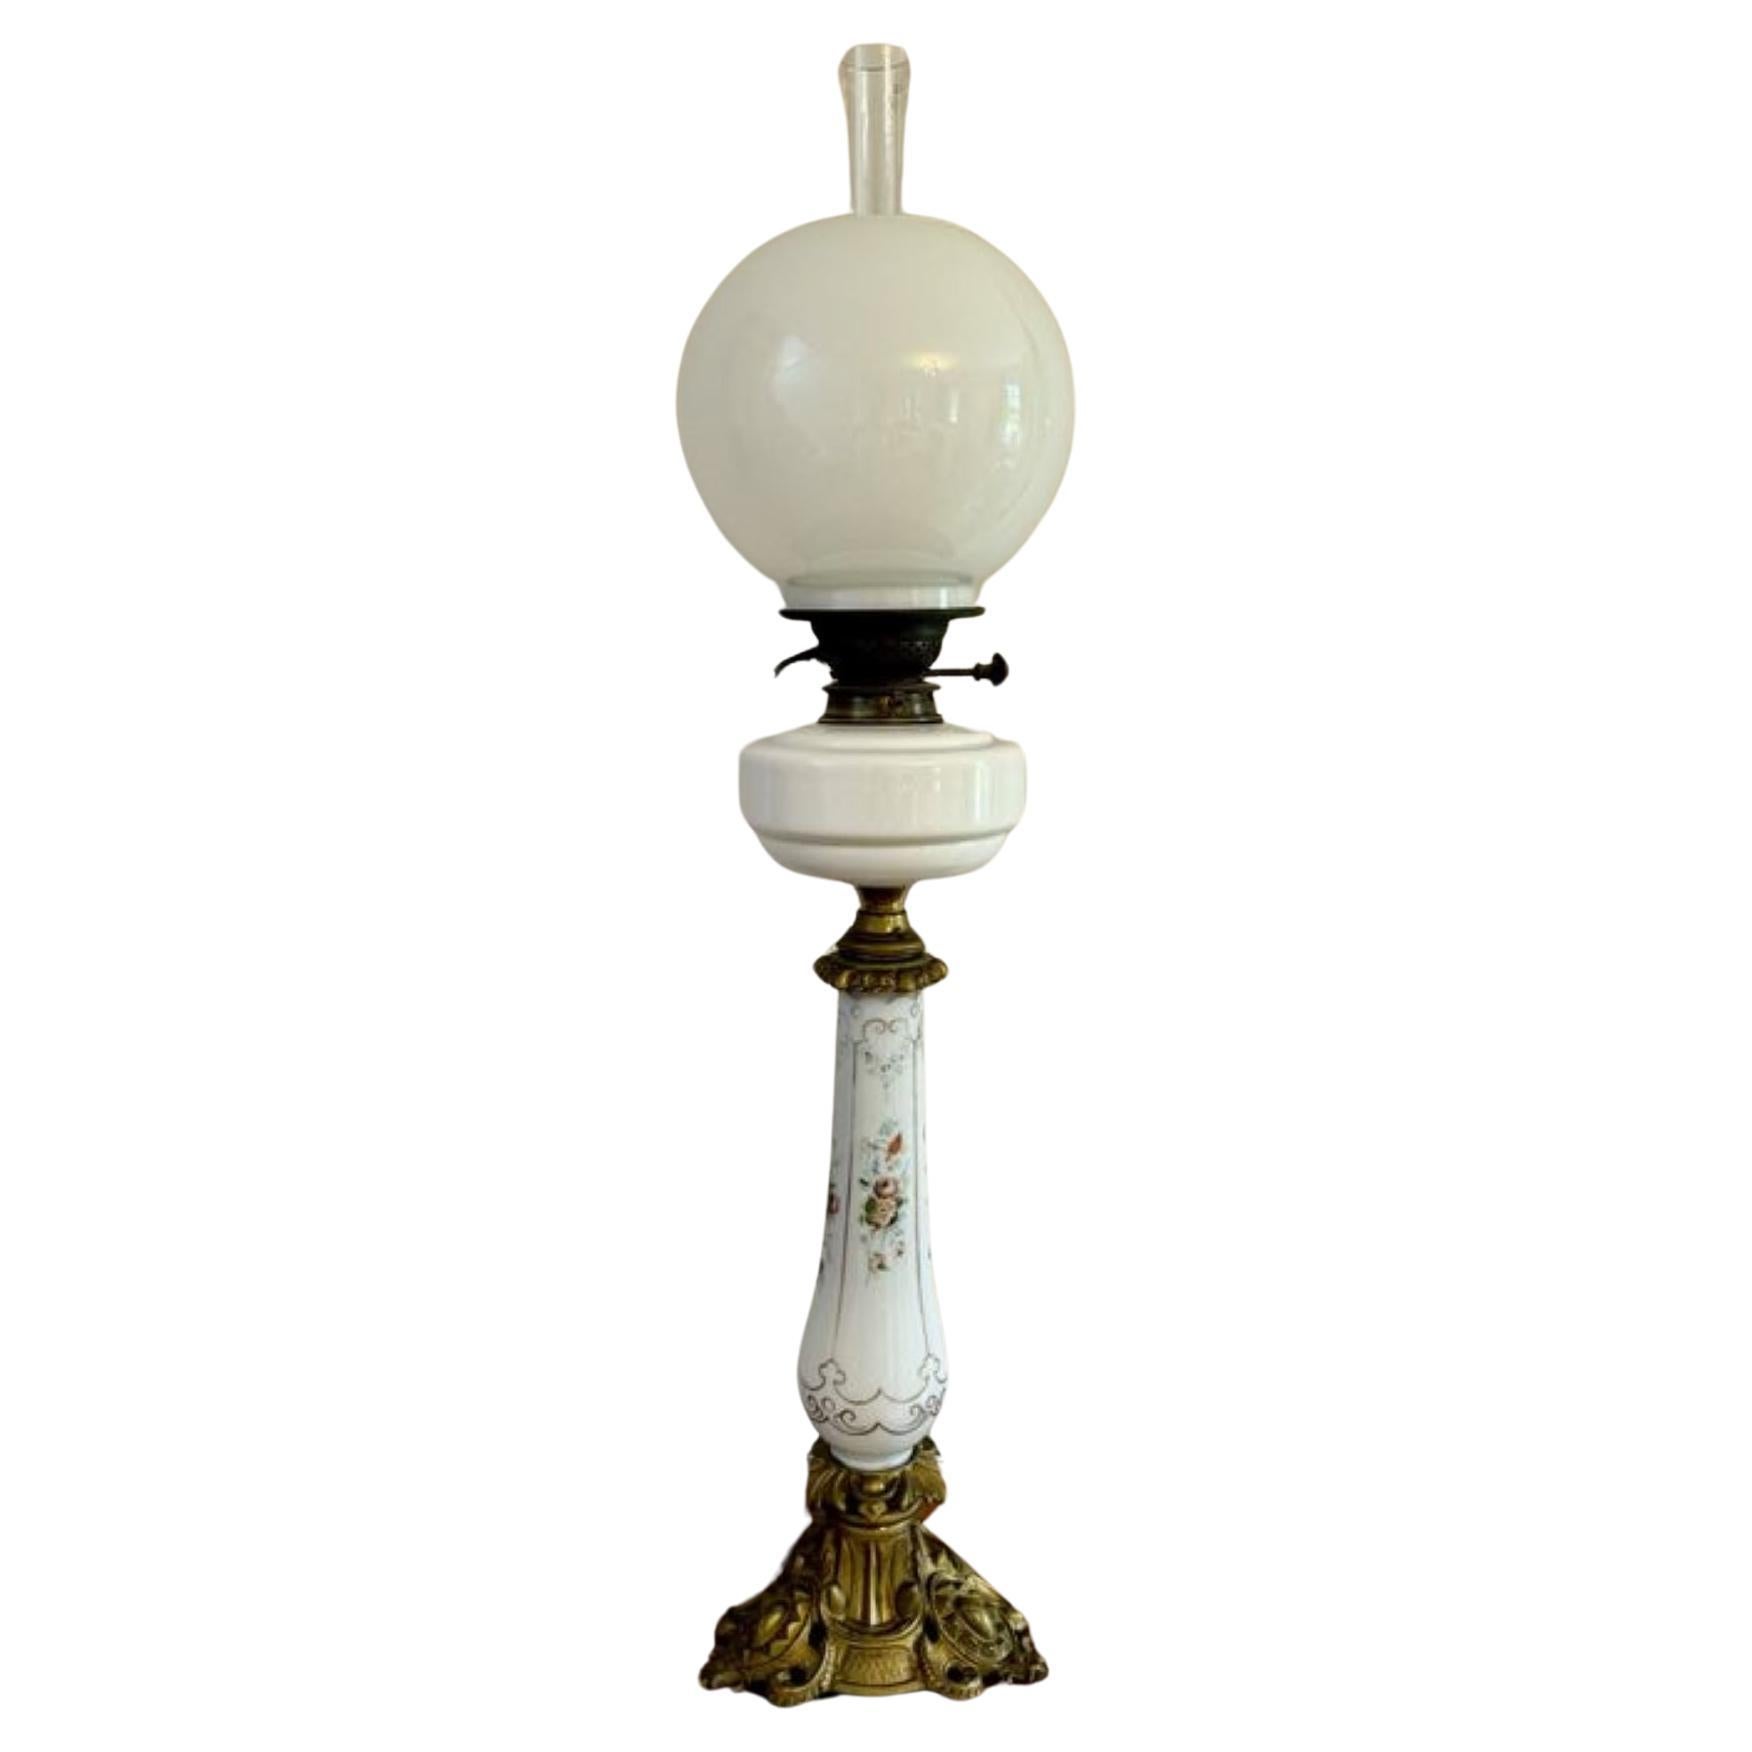 Fantastische Qualität antike viktorianische Öllampe 